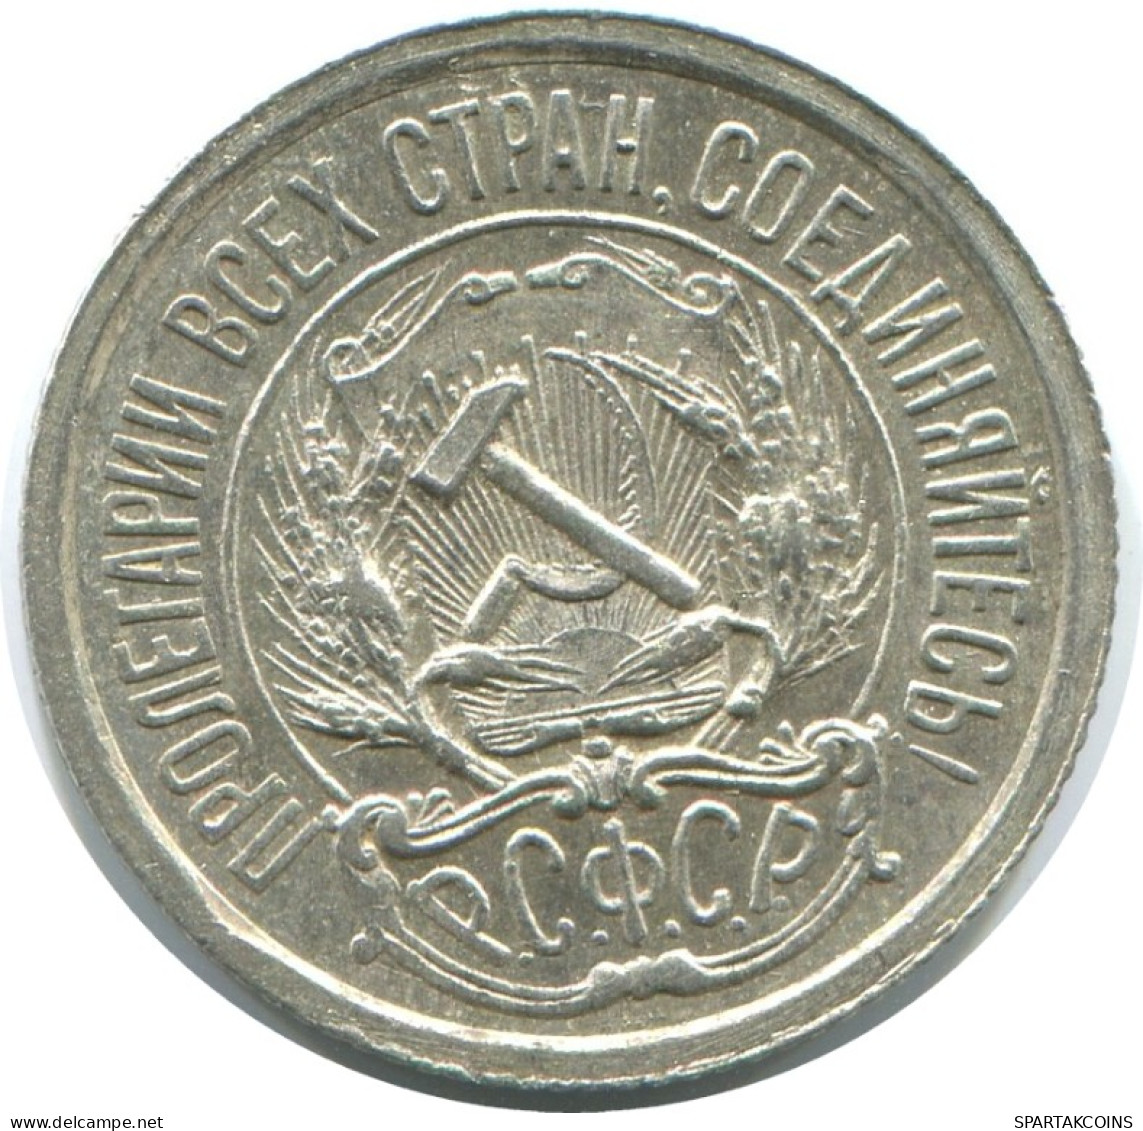 10 KOPEKS 1923 RUSSLAND RUSSIA RSFSR SILBER Münze HIGH GRADE #AE910.4.D.A - Russia